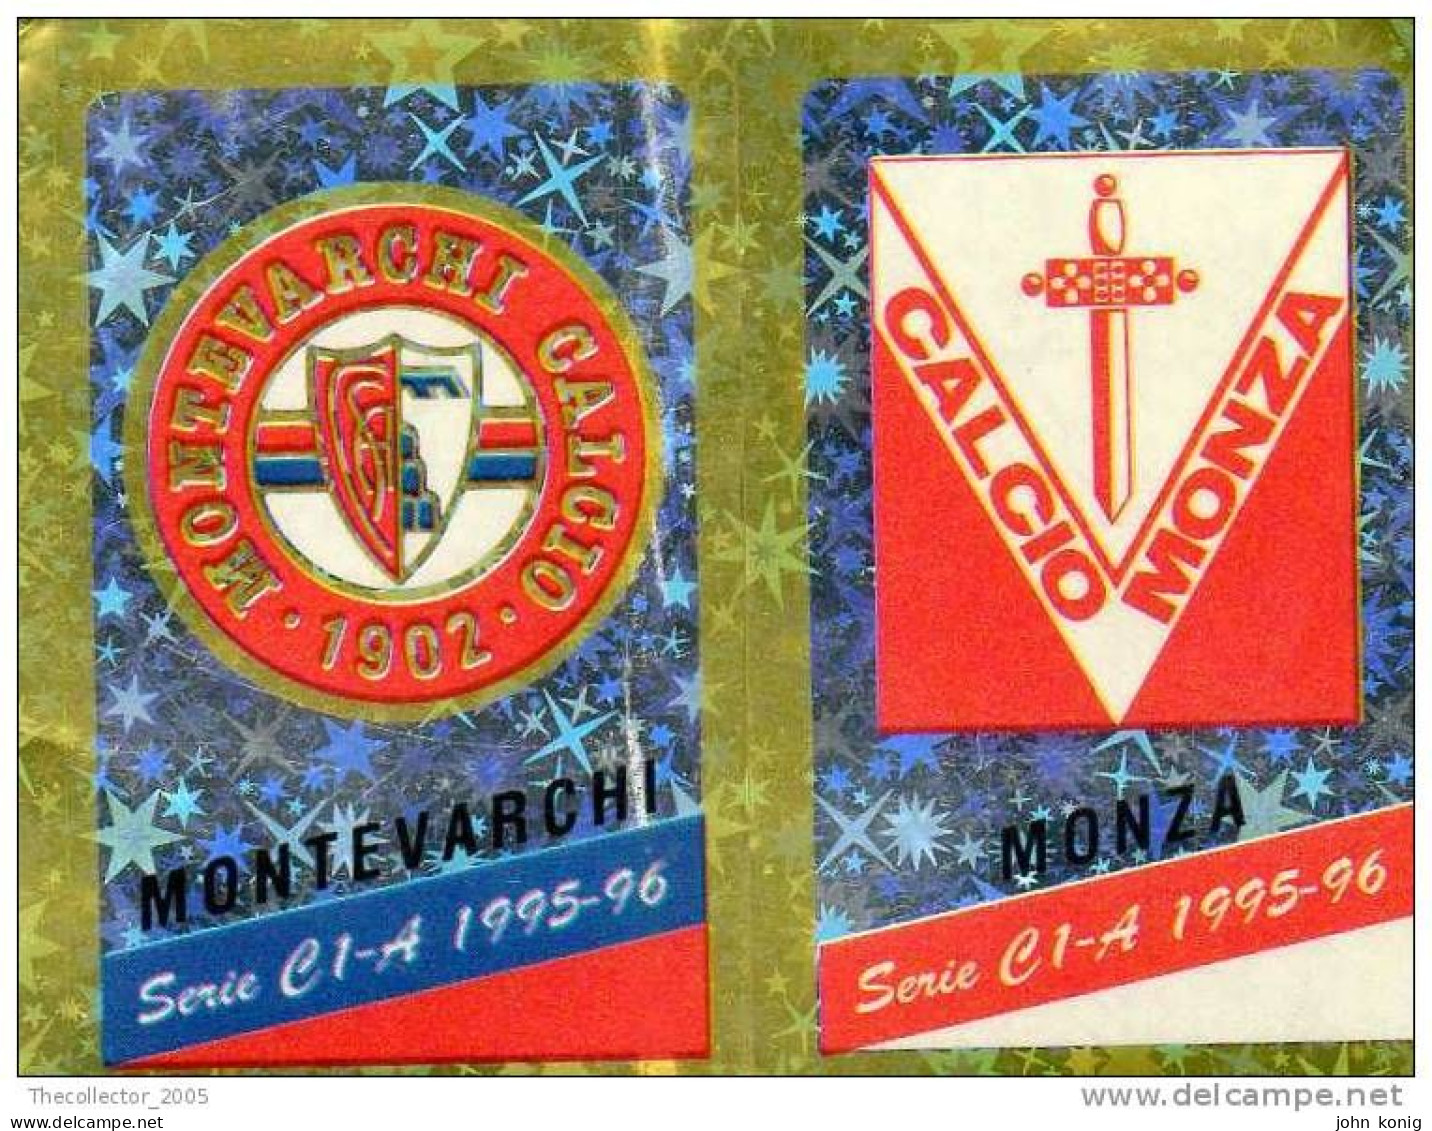 CALCIATORI - CALCIO Figurine Panini-calciatori 1995-96-n.539ab-scudetto Montevarchi-Monza (prismatico) - NUOVA-MAI INCOL - Edition Italienne